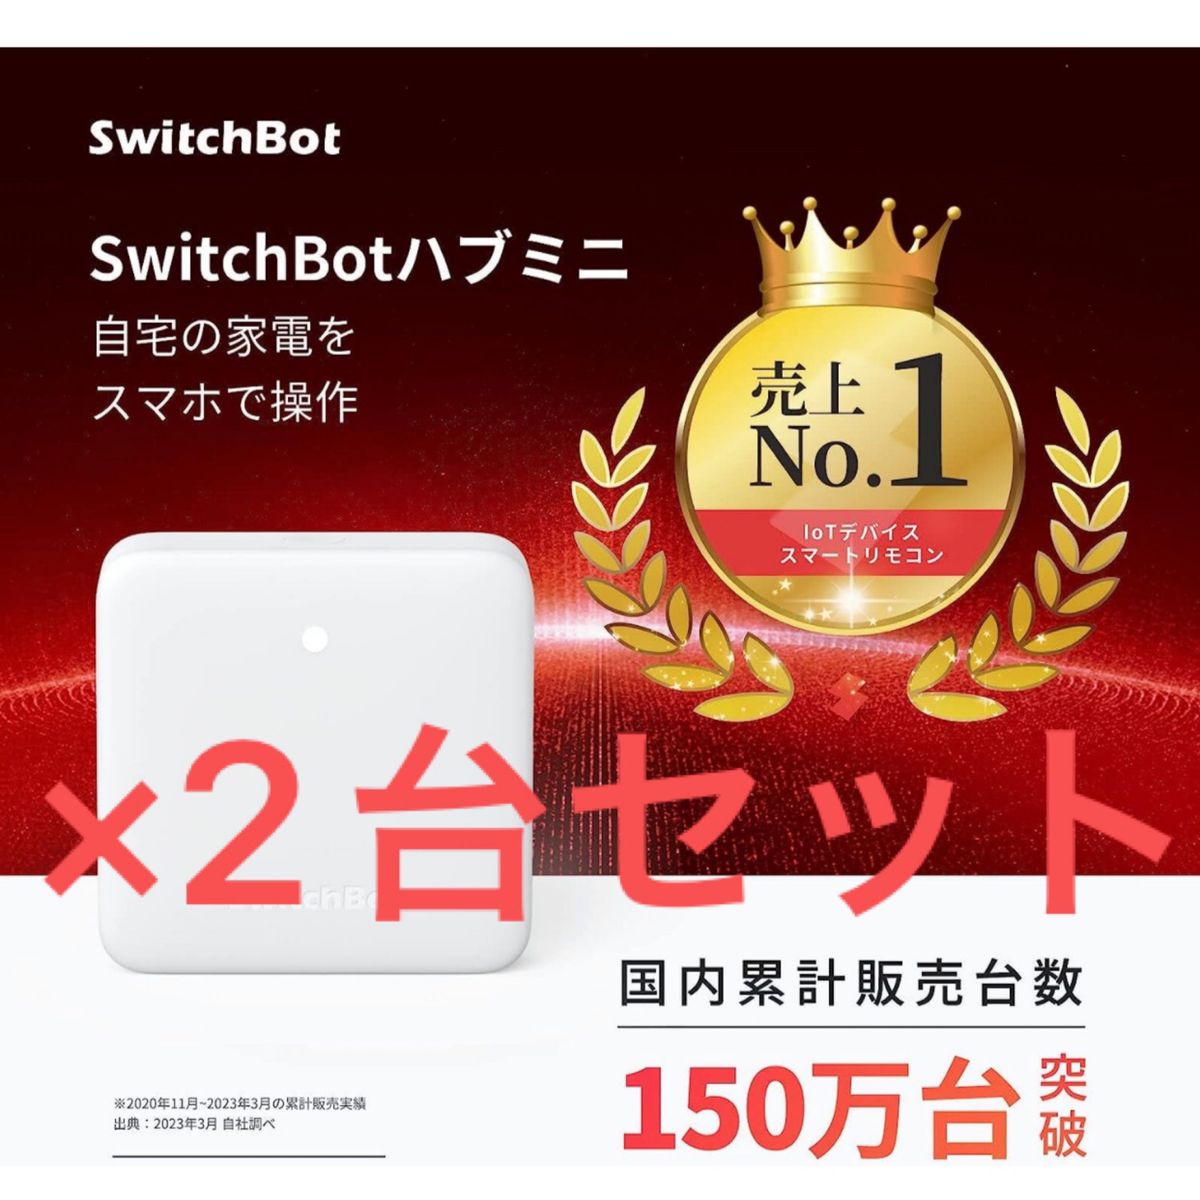 SwitchBotハブミニ スイッチボット　新品未使用品です。×2台セット販売です。